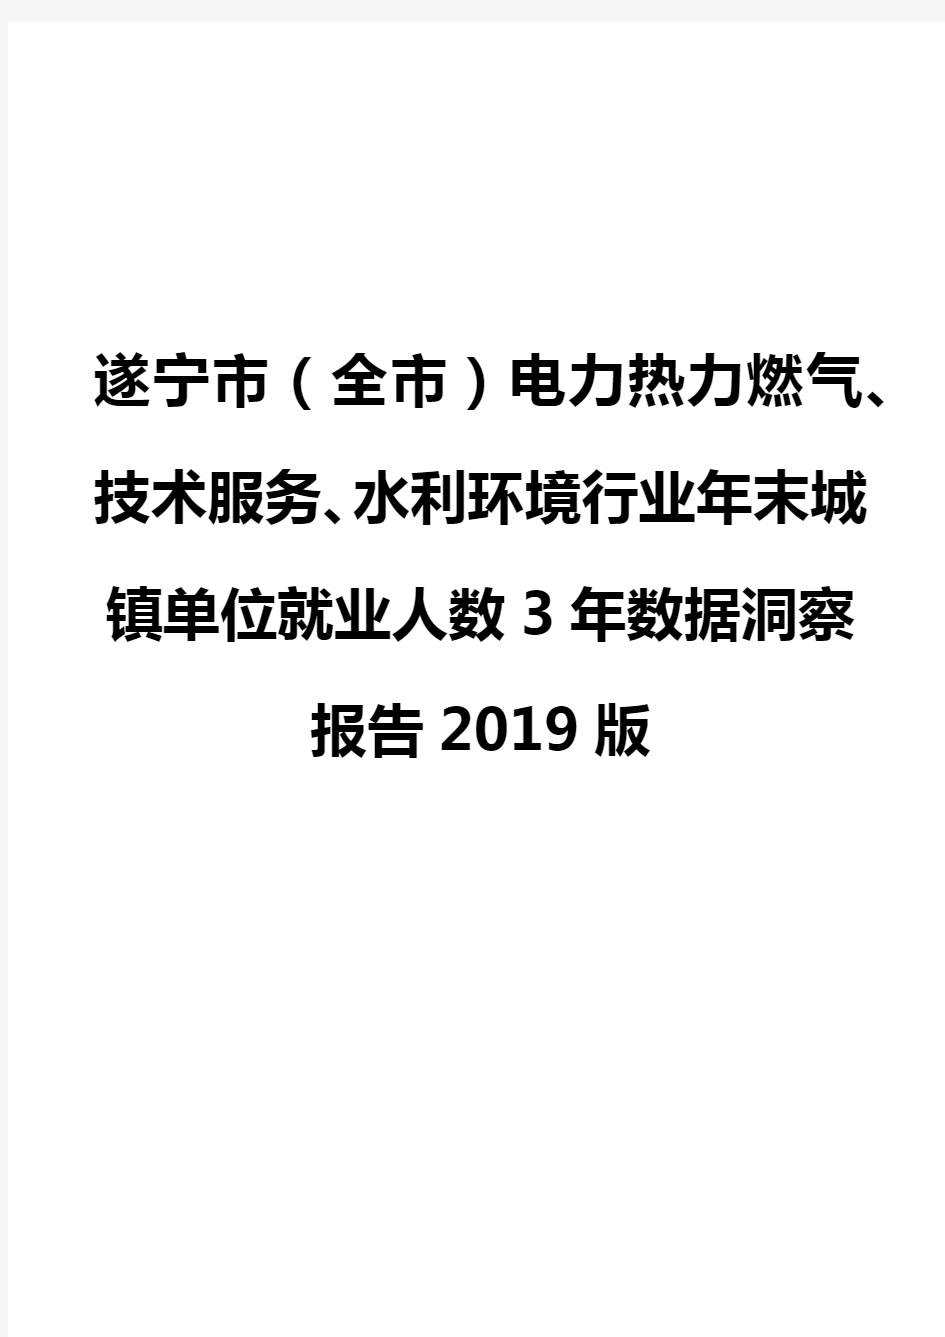 遂宁市(全市)电力热力燃气、技术服务、水利环境行业年末城镇单位就业人数3年数据洞察报告2019版